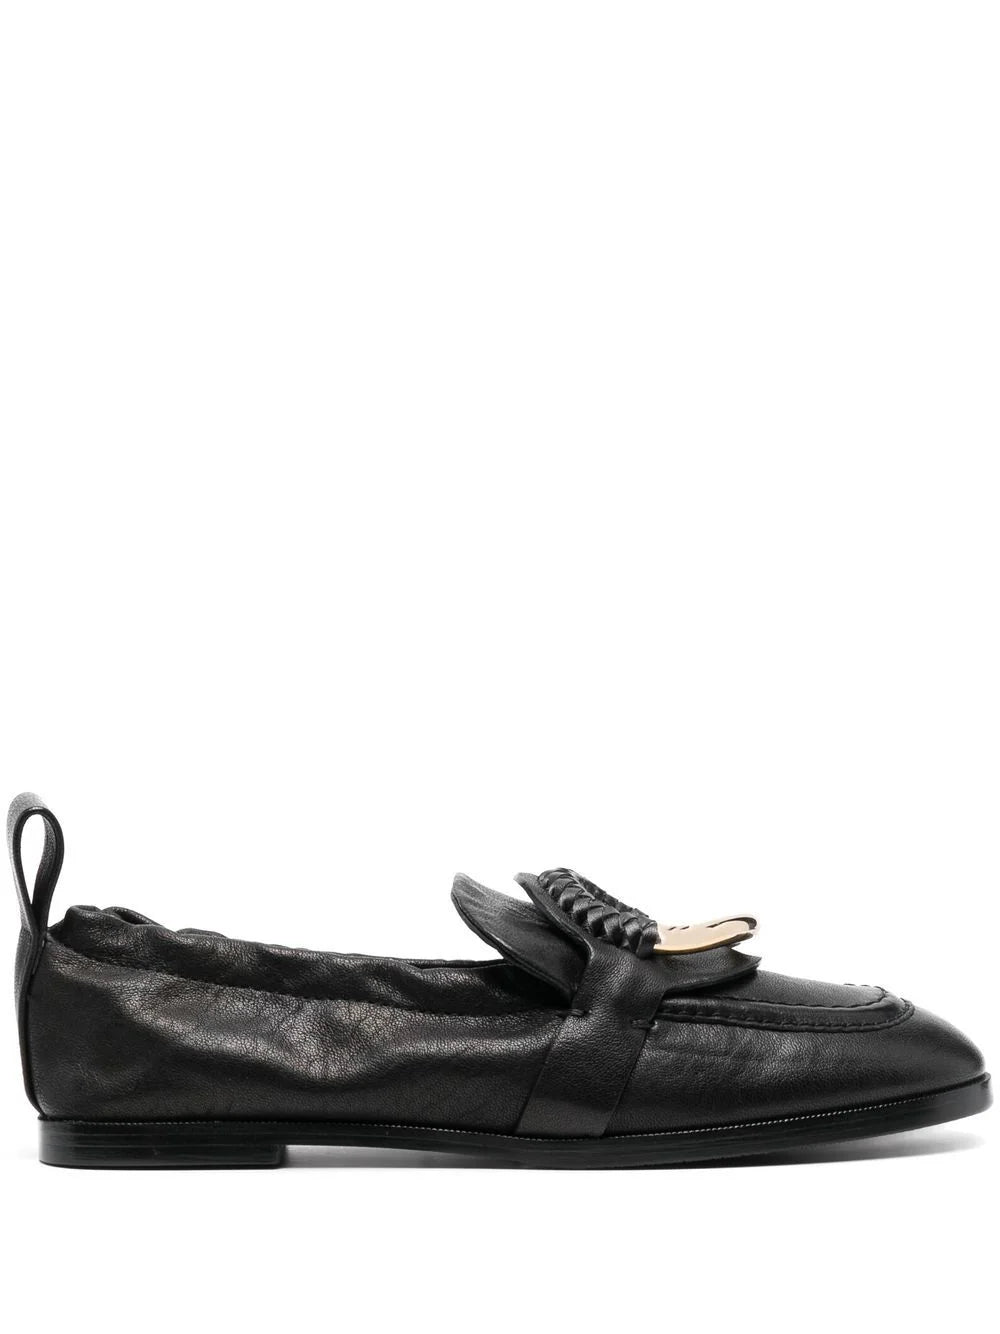 Hana loafers, black